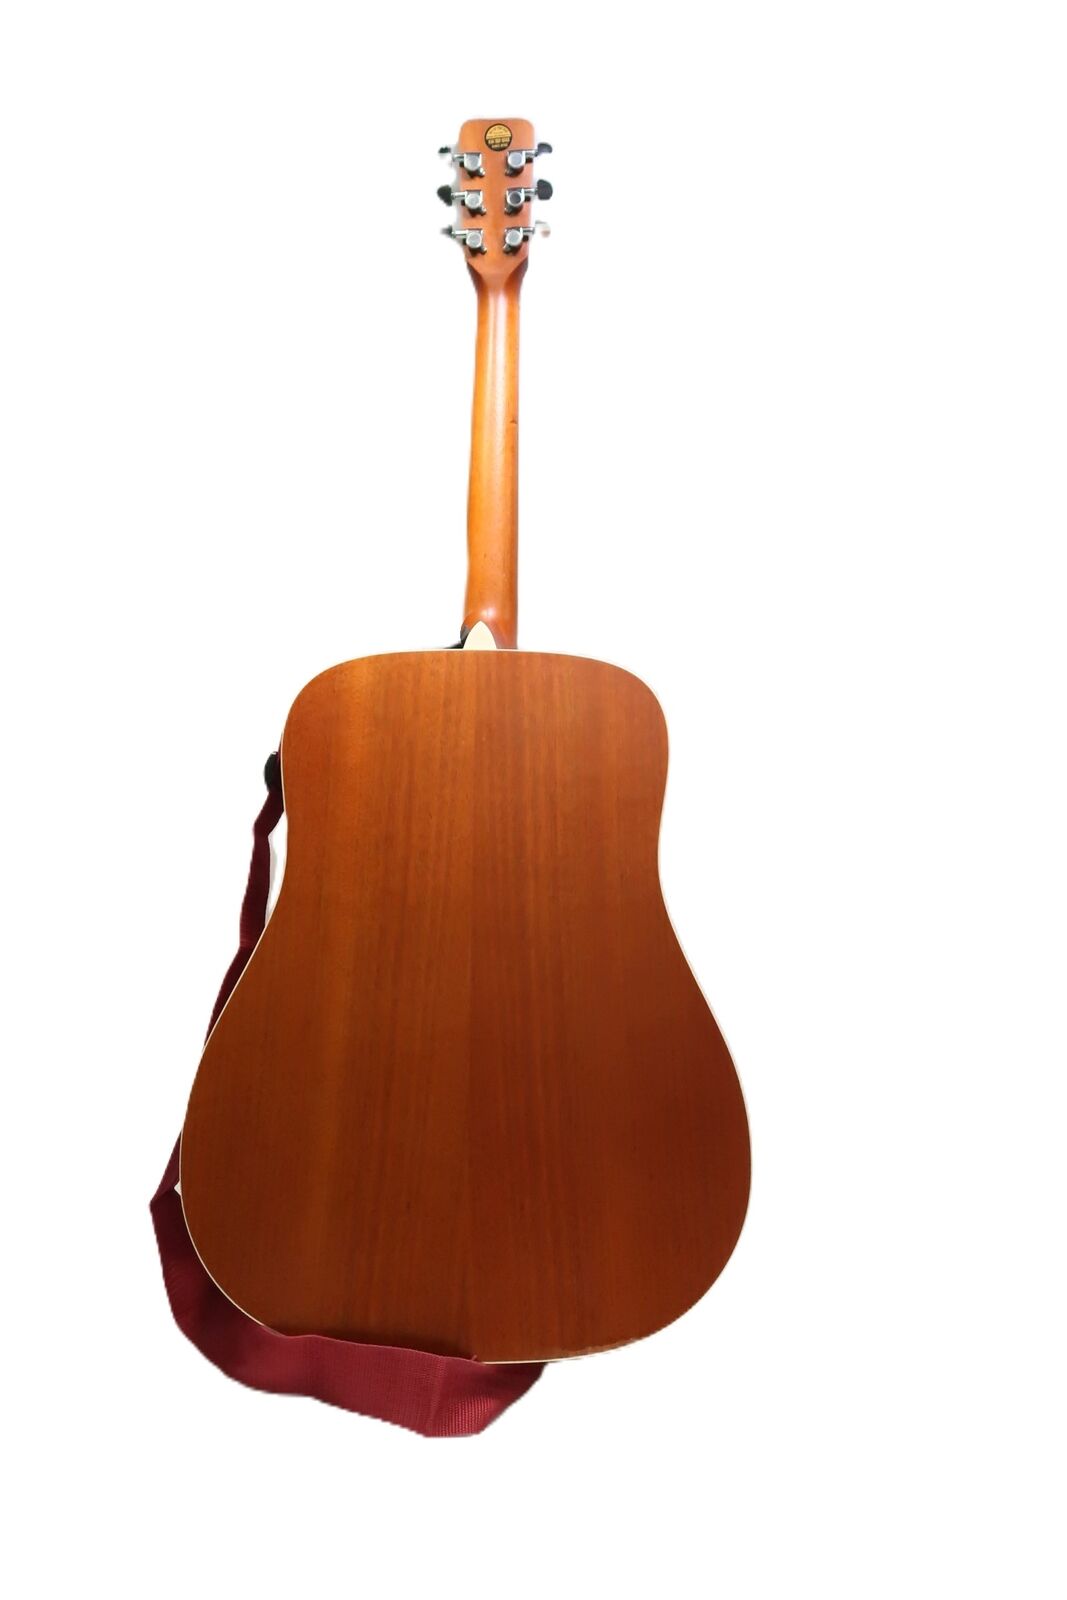 Nashville Guitar Works D10 Acoustic Guitar 9788 6